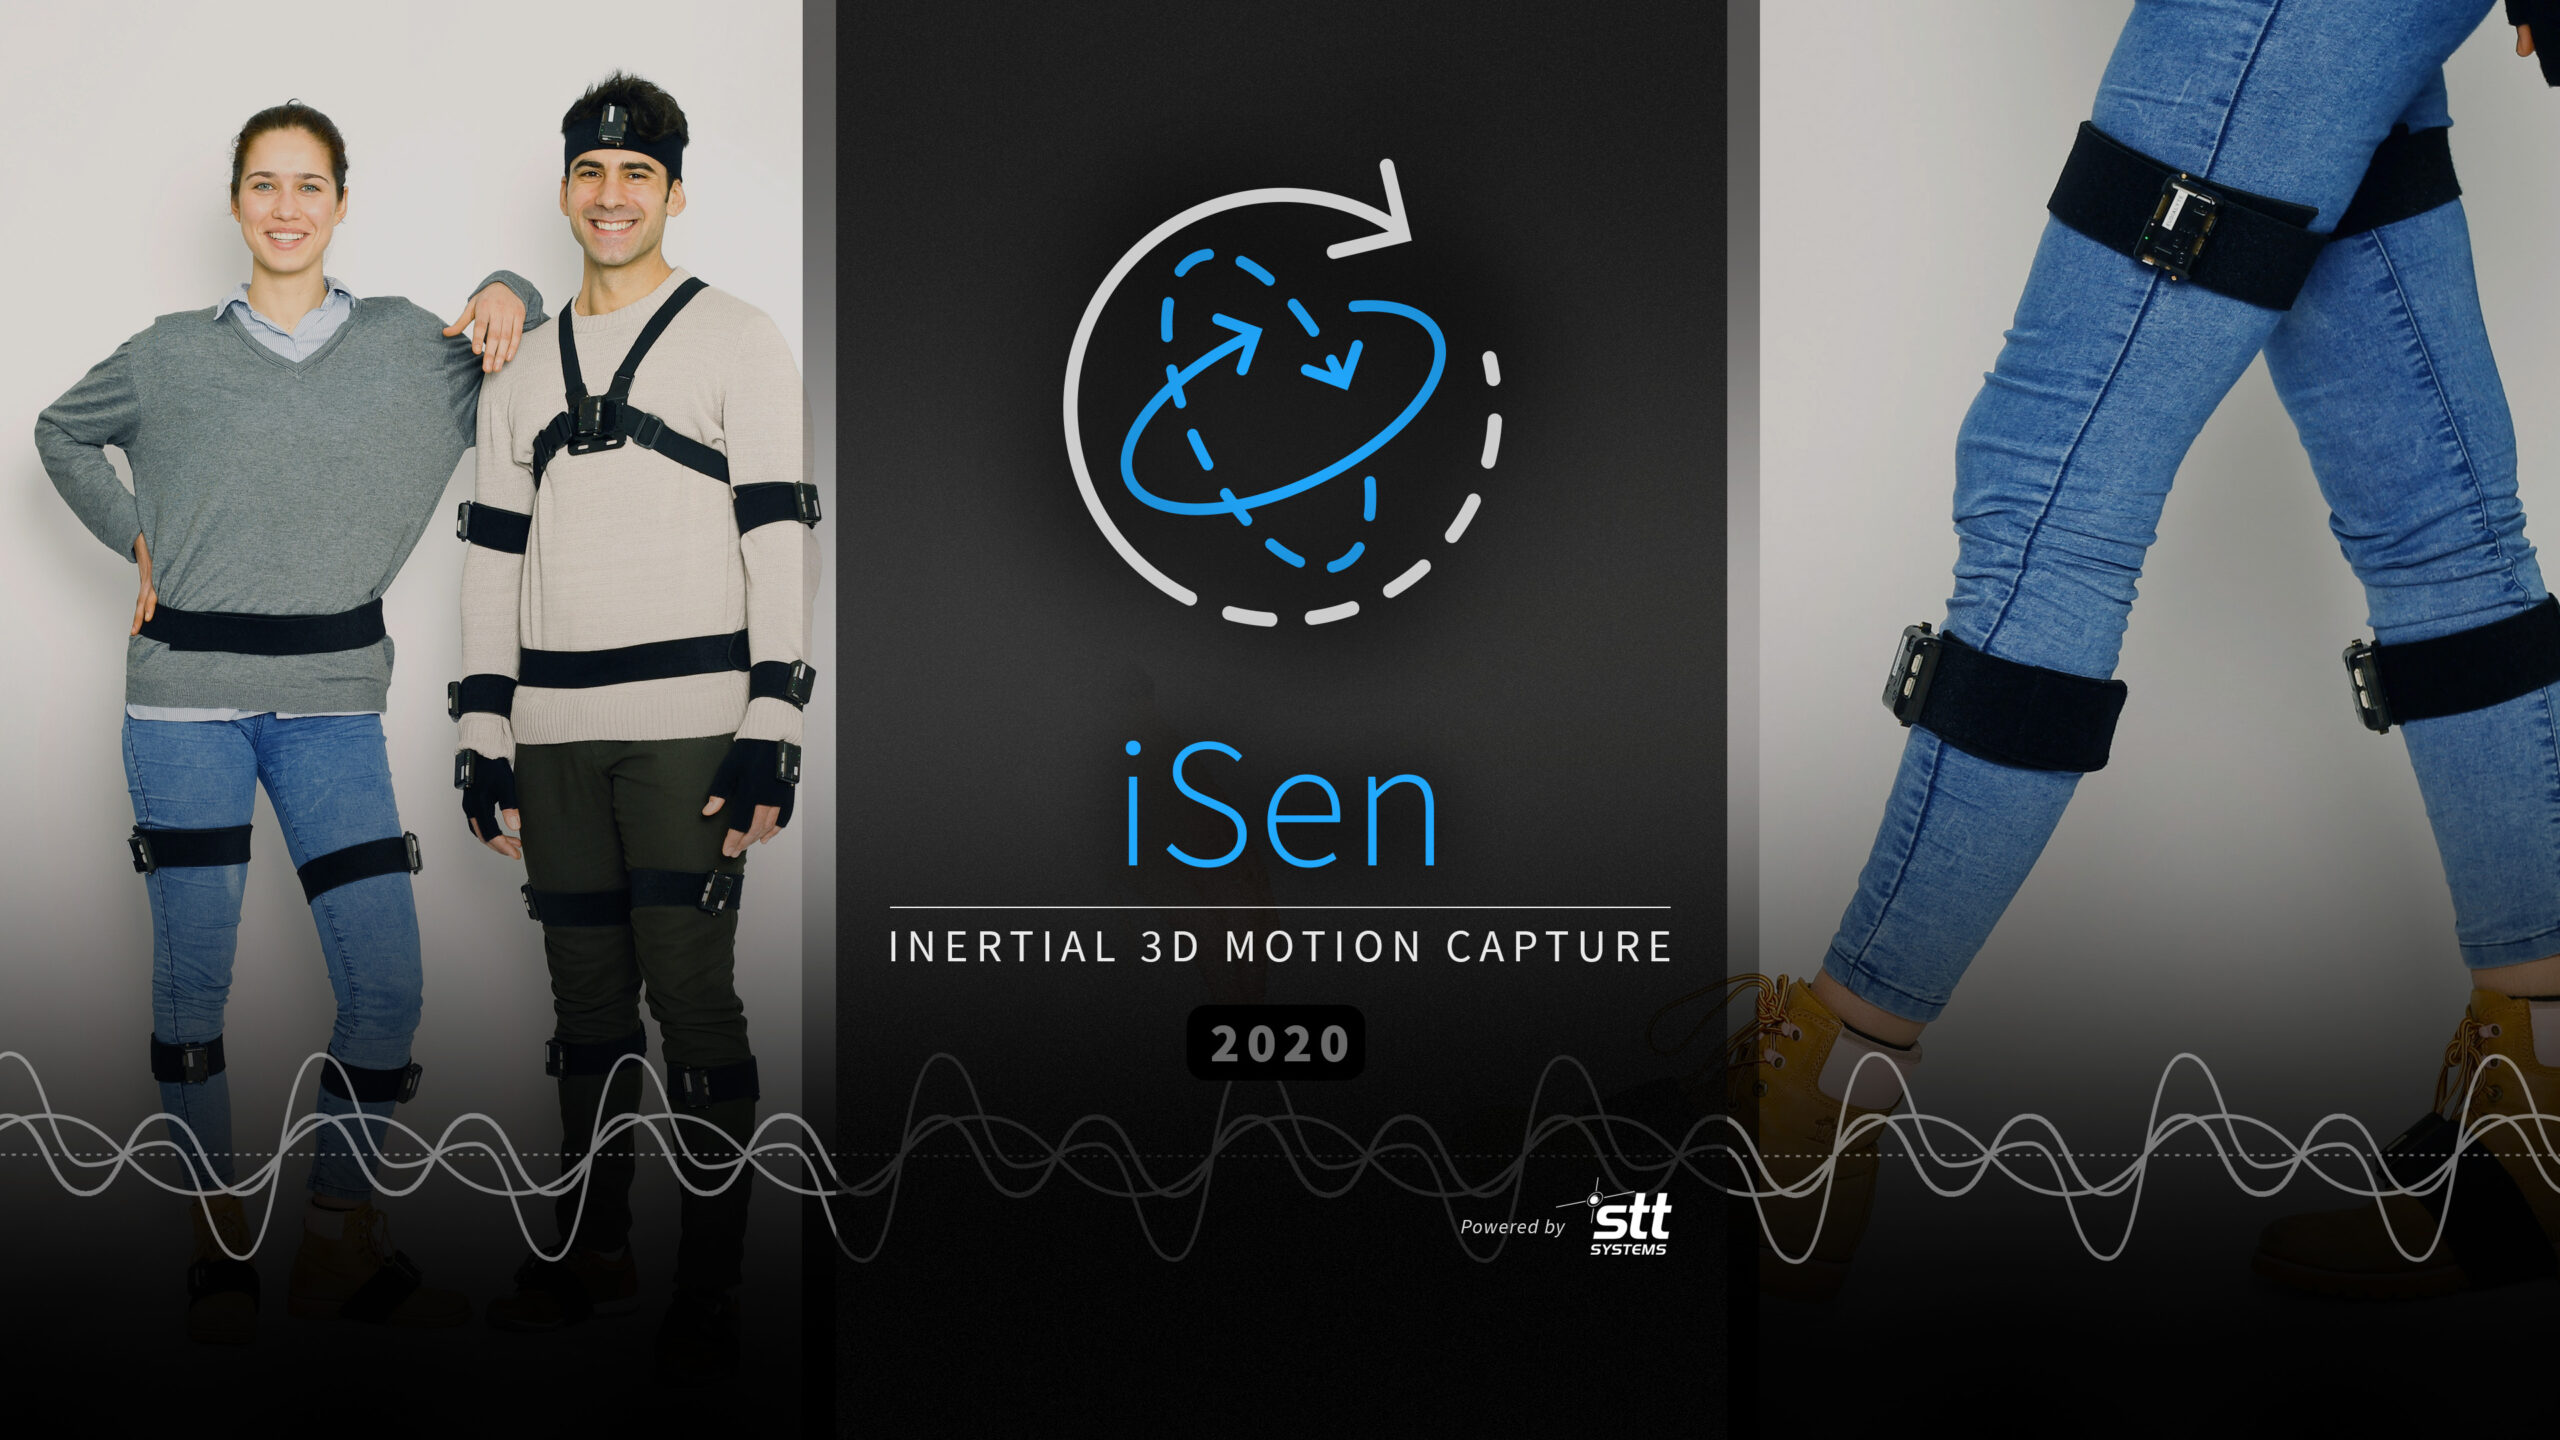 2020 iSen version has been released!